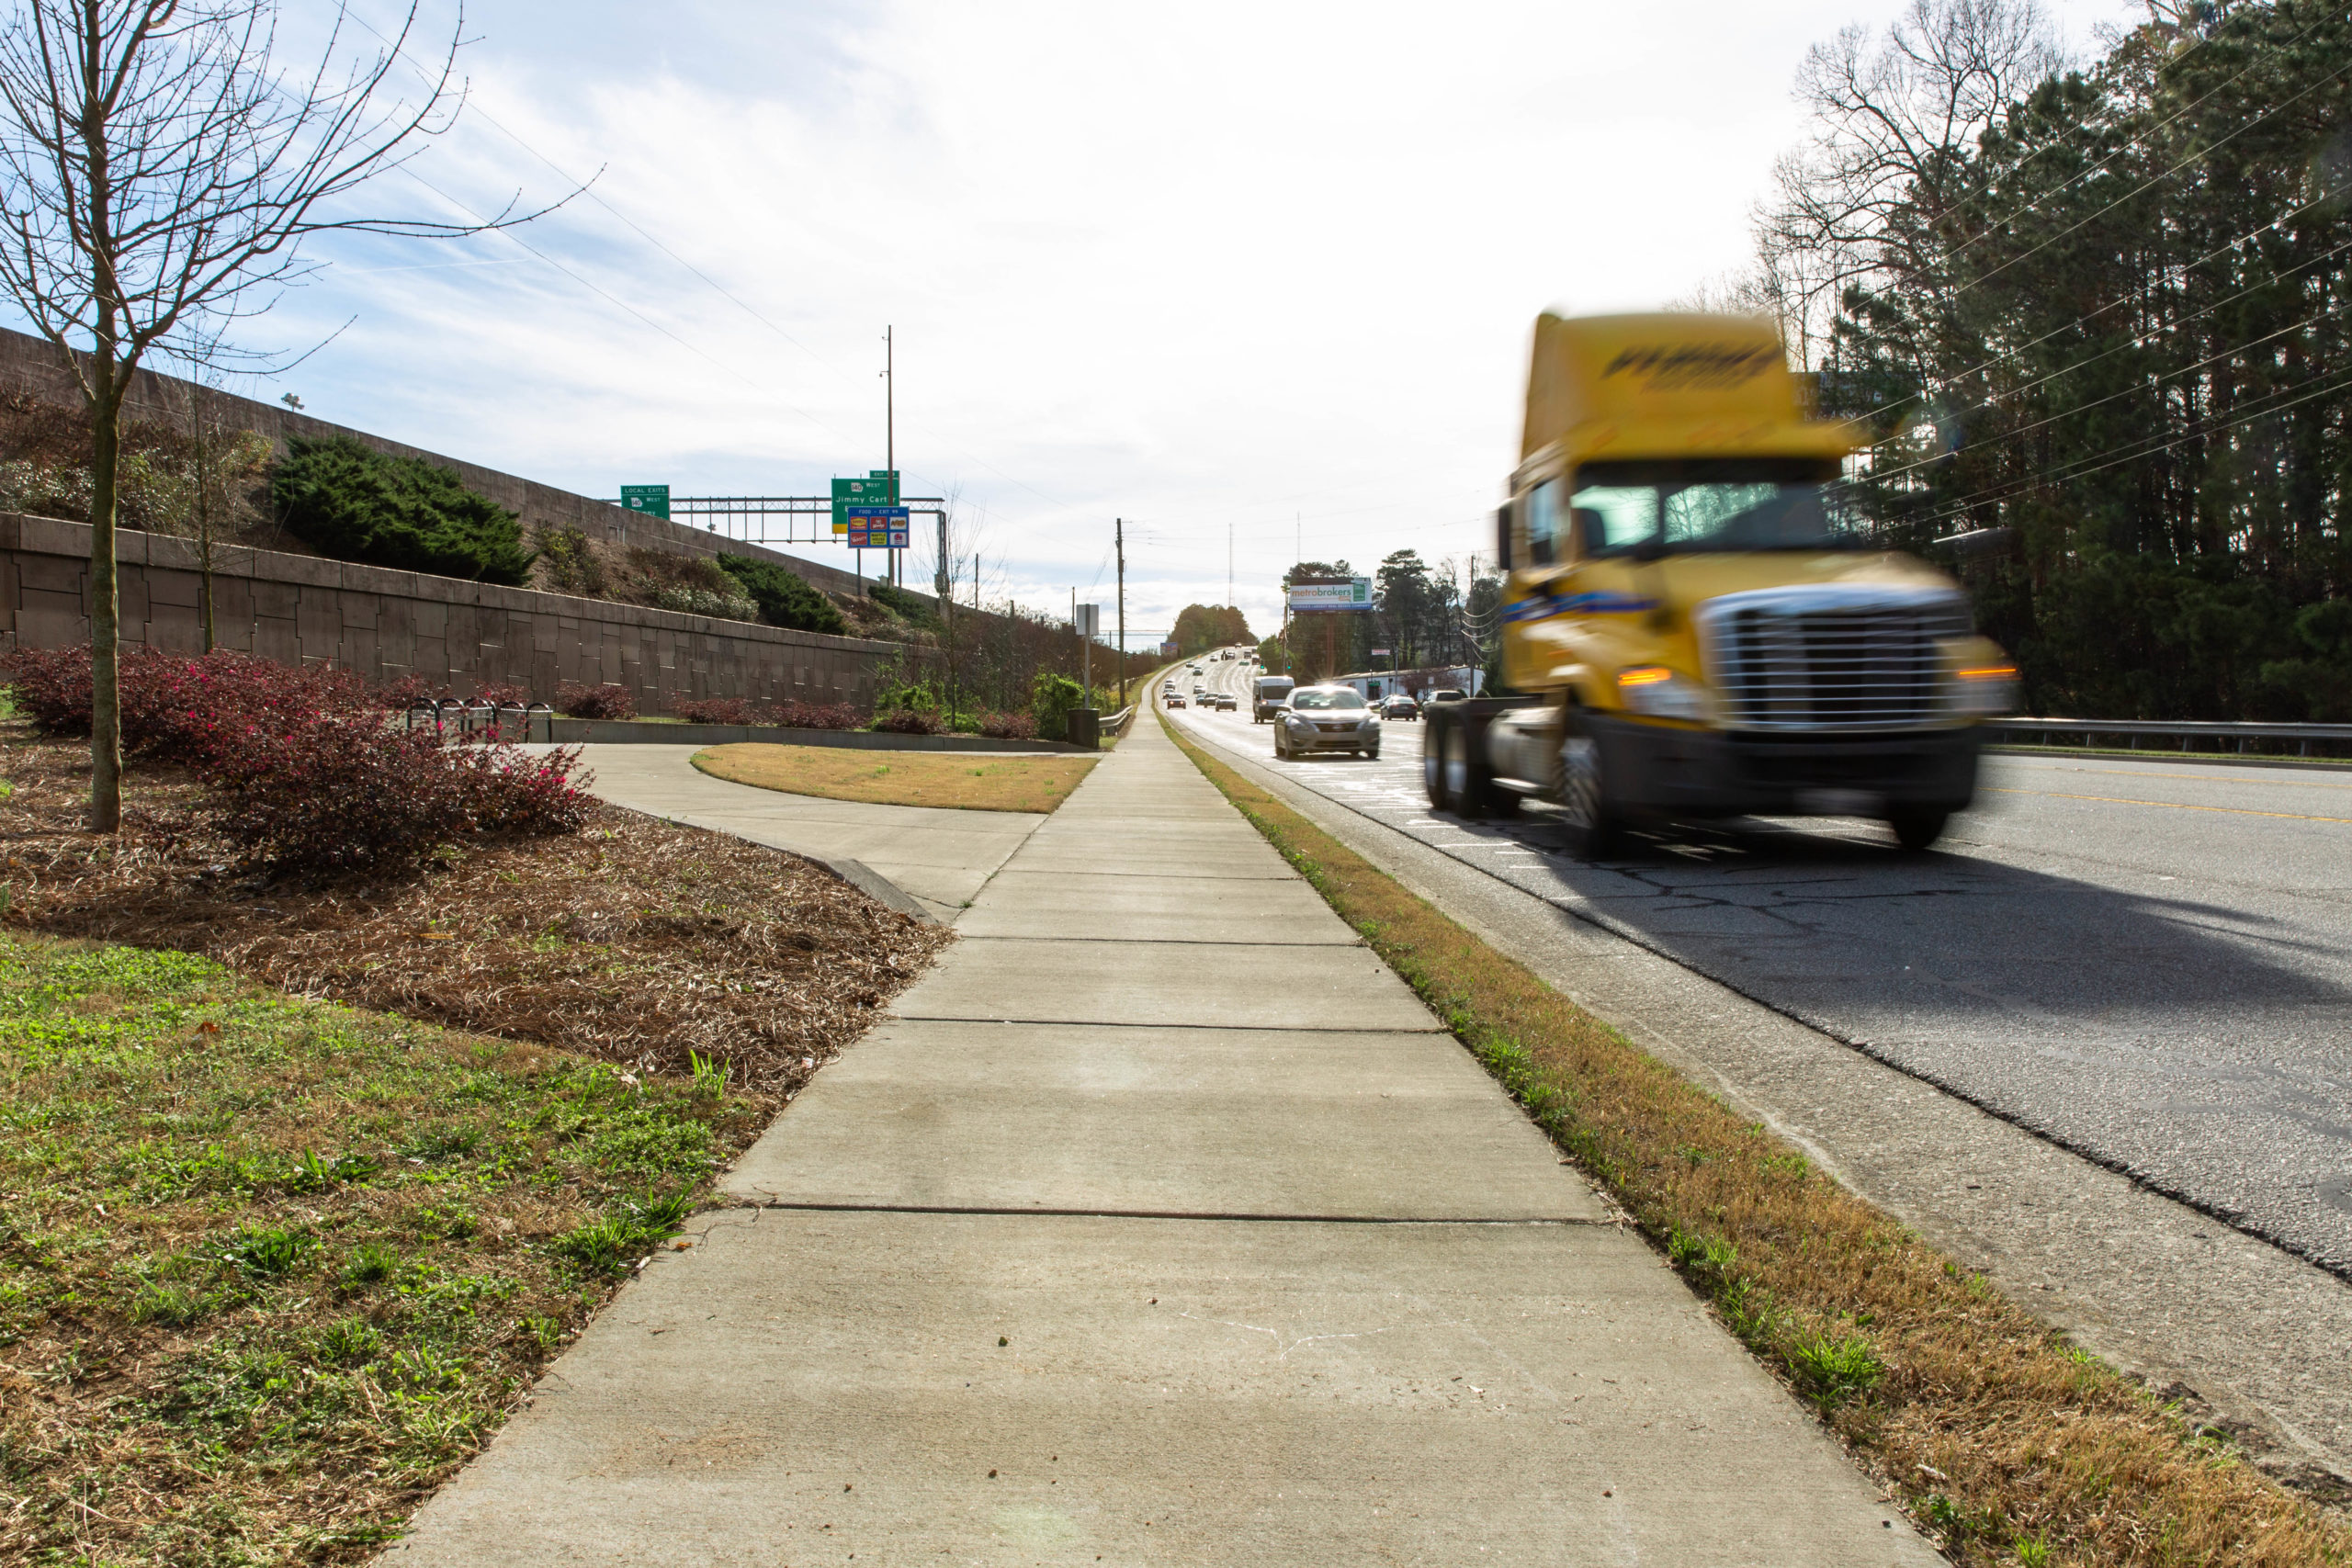 Infrastructure Improvements - Sidewalks